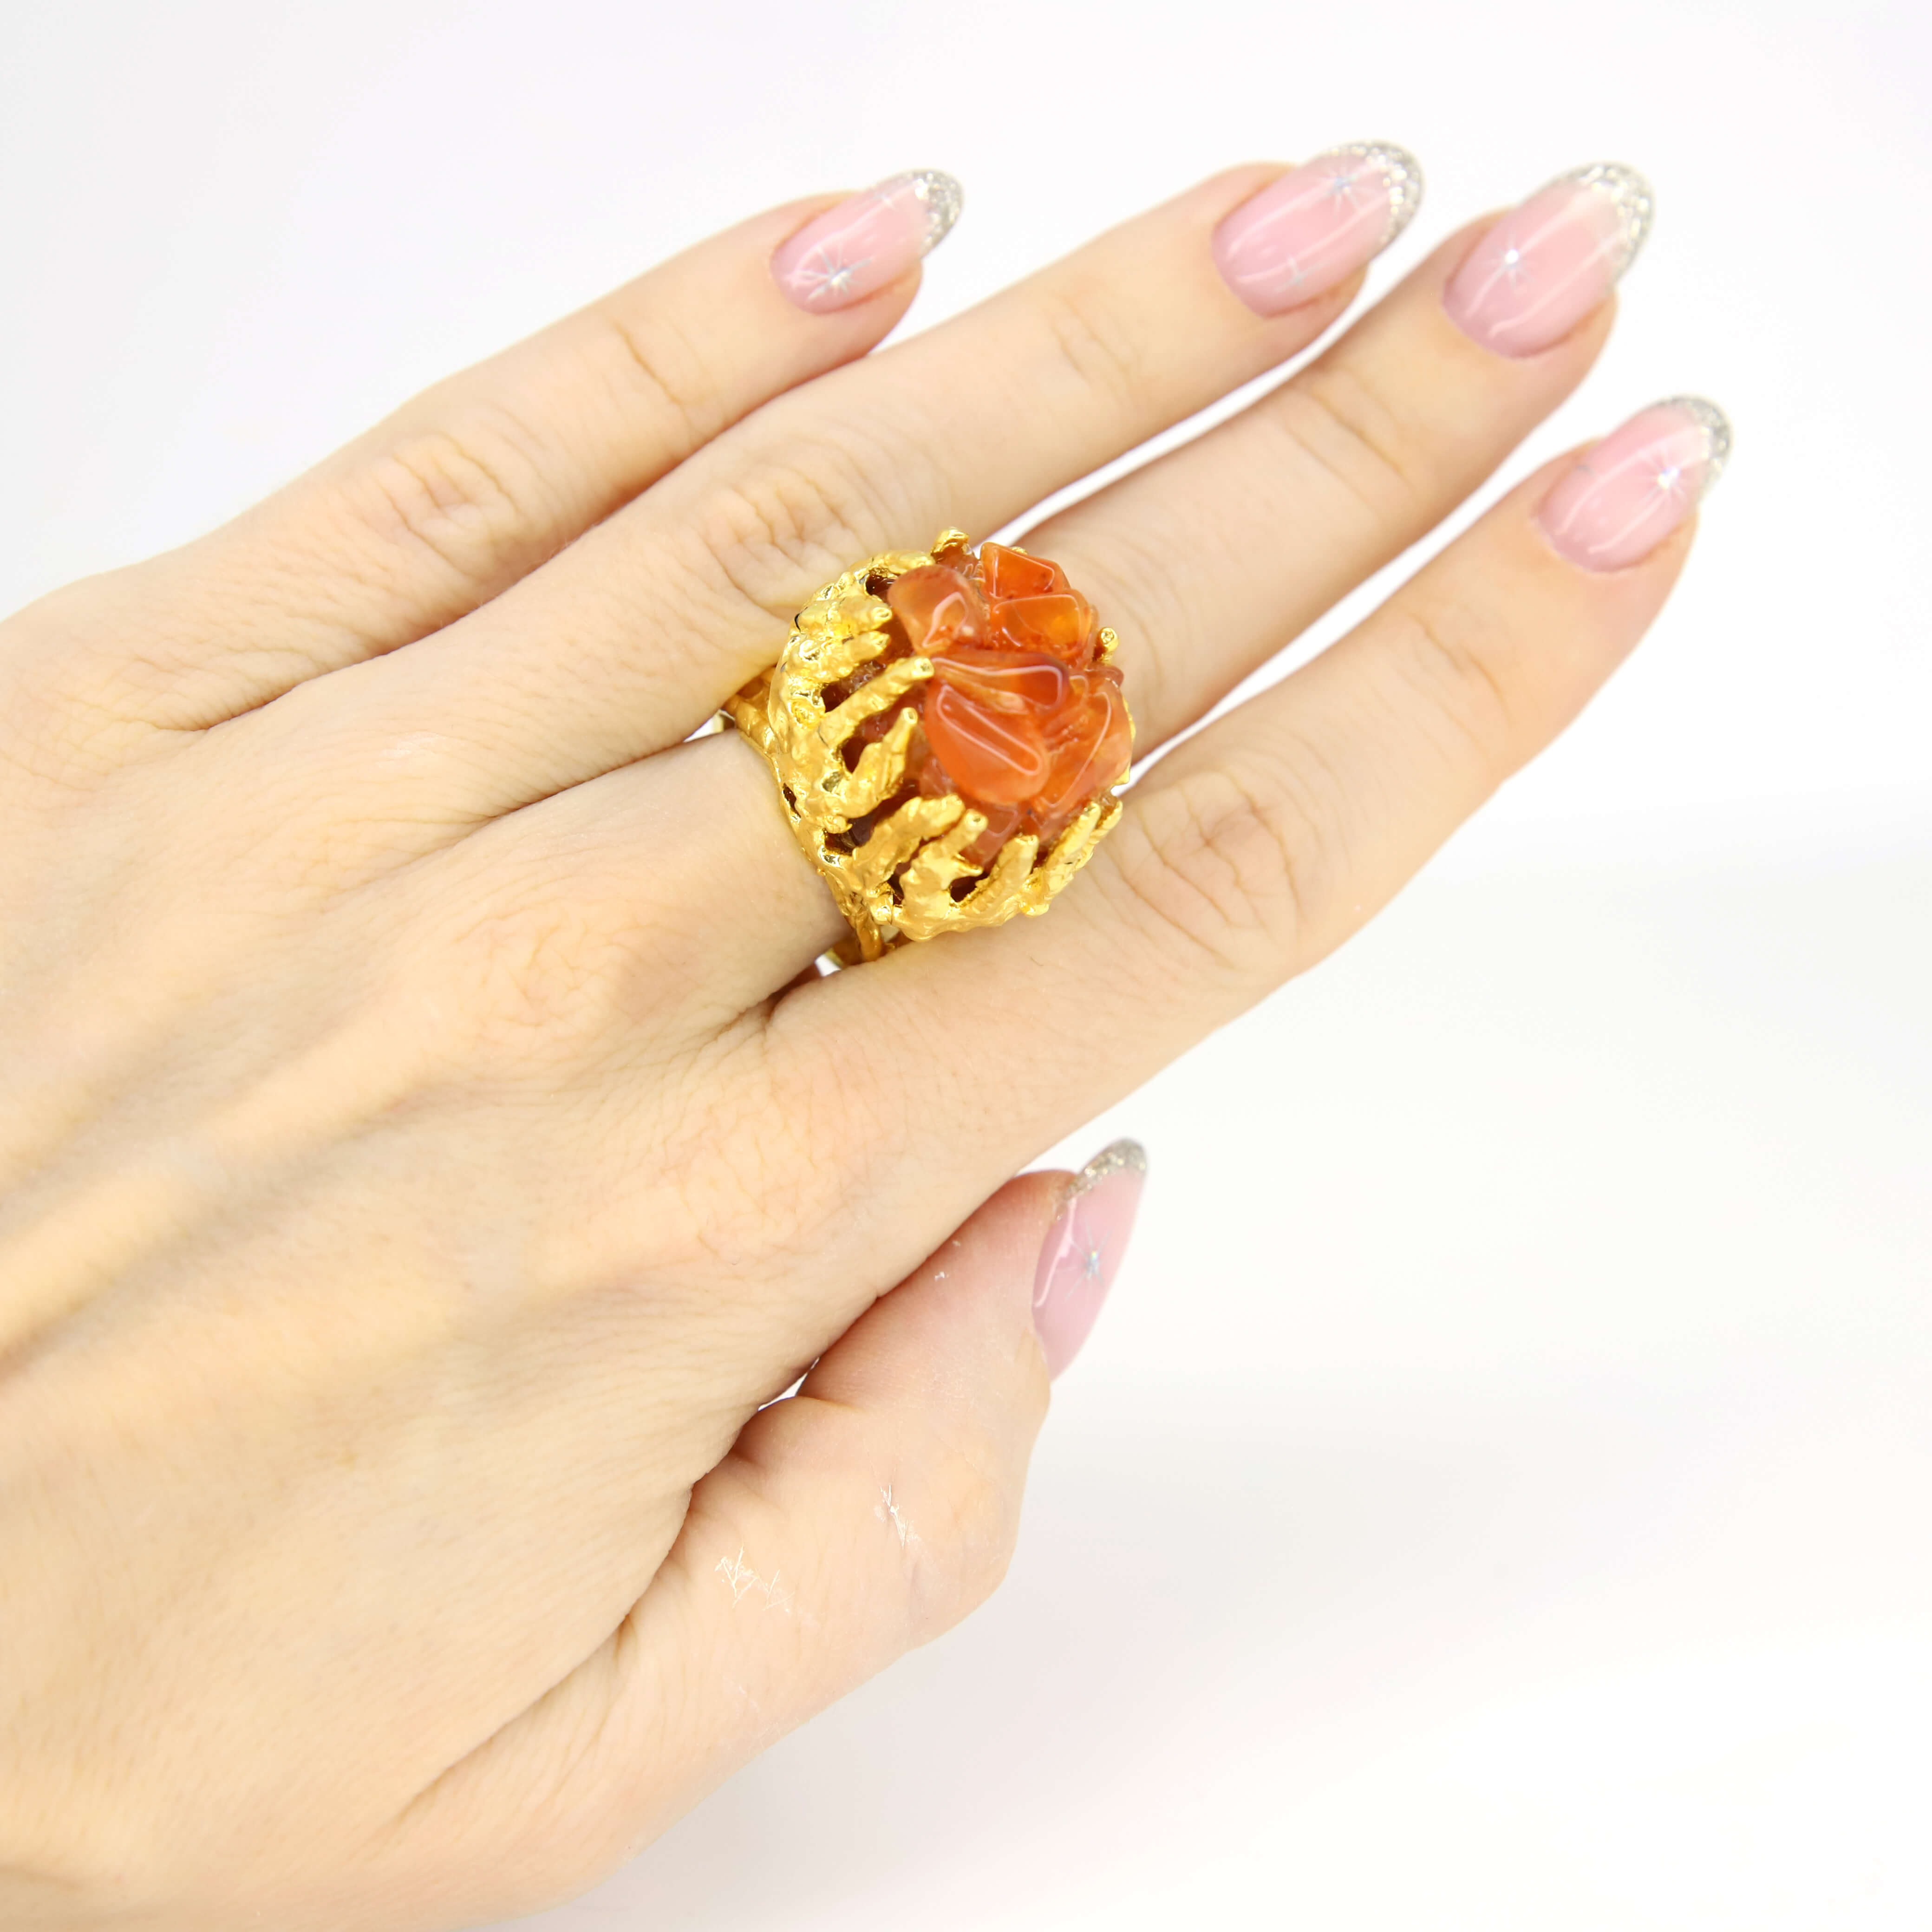 Винтажное кольцо Hobe размер 15.5-18, цвет Оранжевый, фото 1